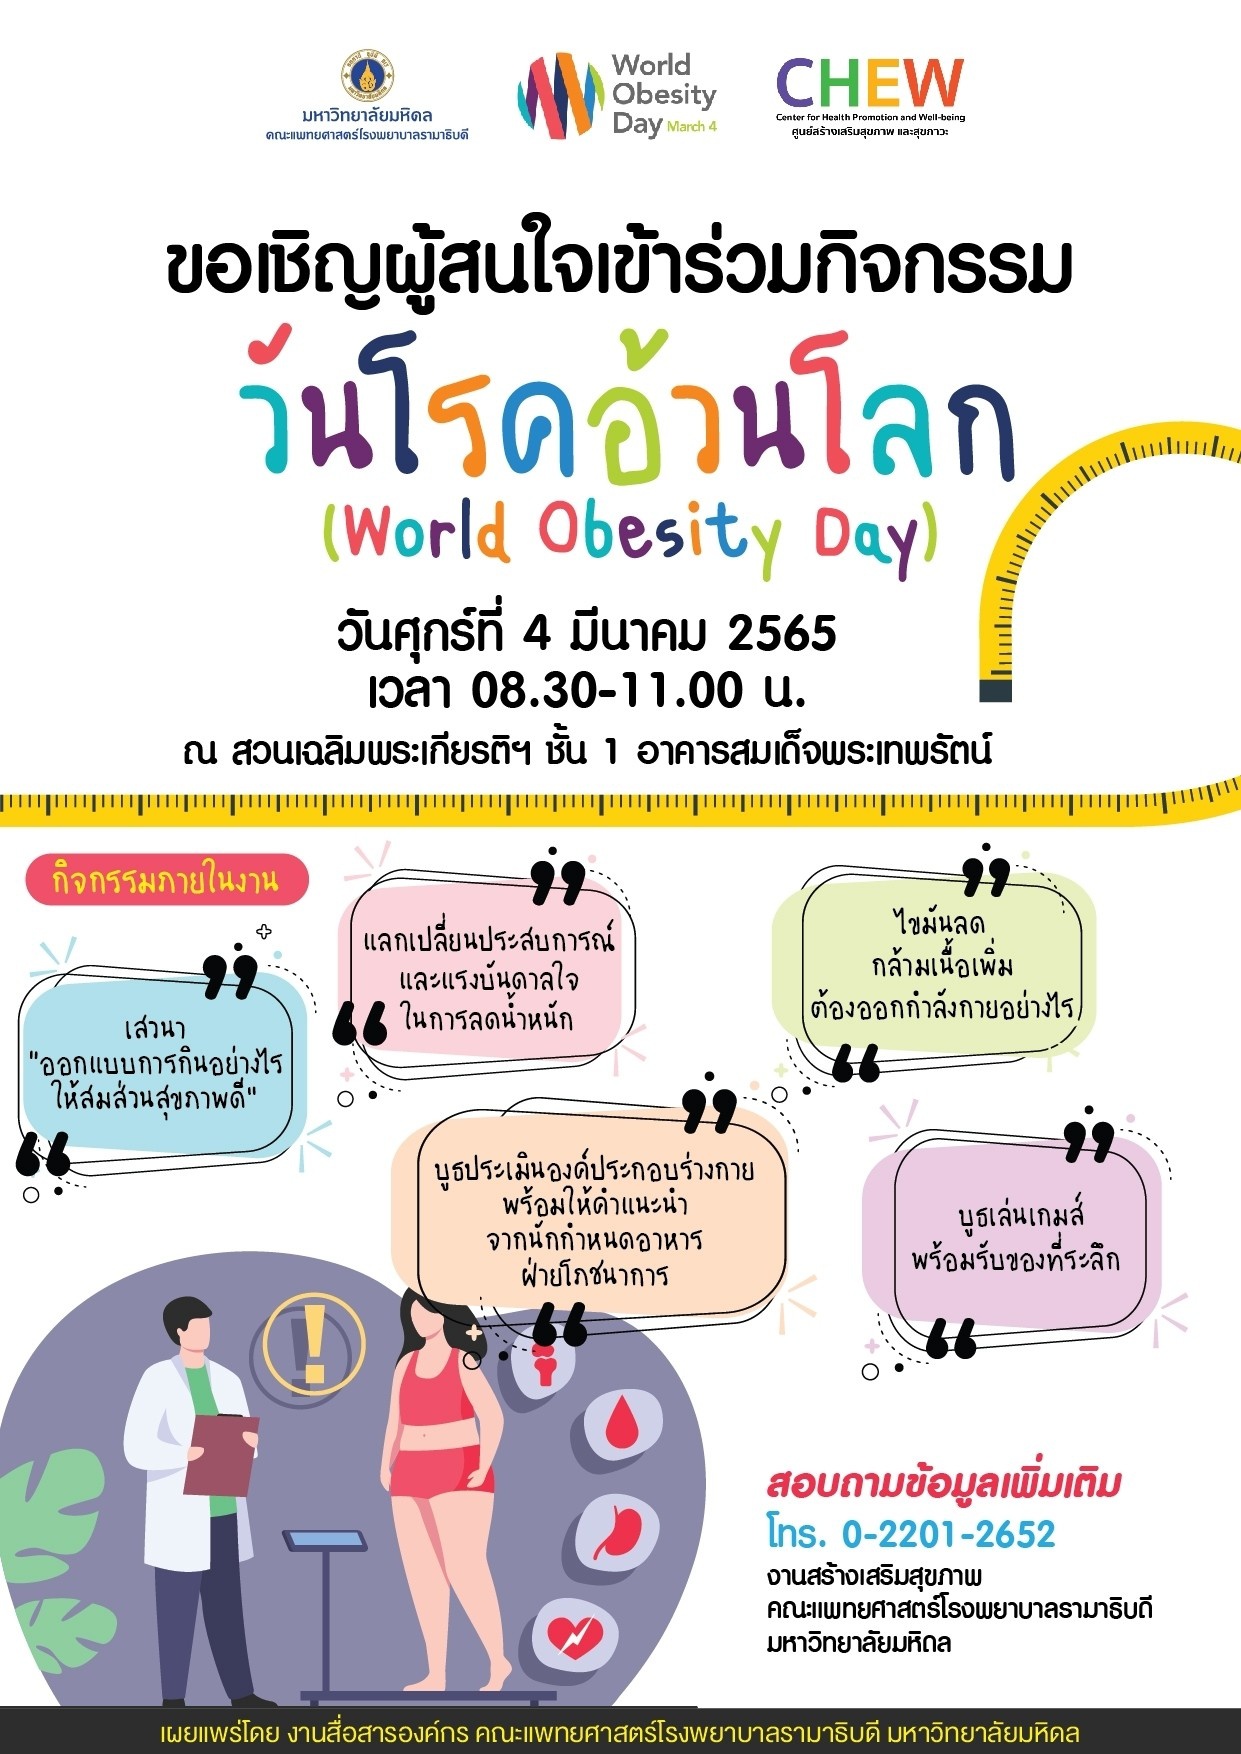 ขอเชิญผู้สนใจเข้าร่วมกิจกรรม วันโรคอ้วนโลก (World Obesity Day)